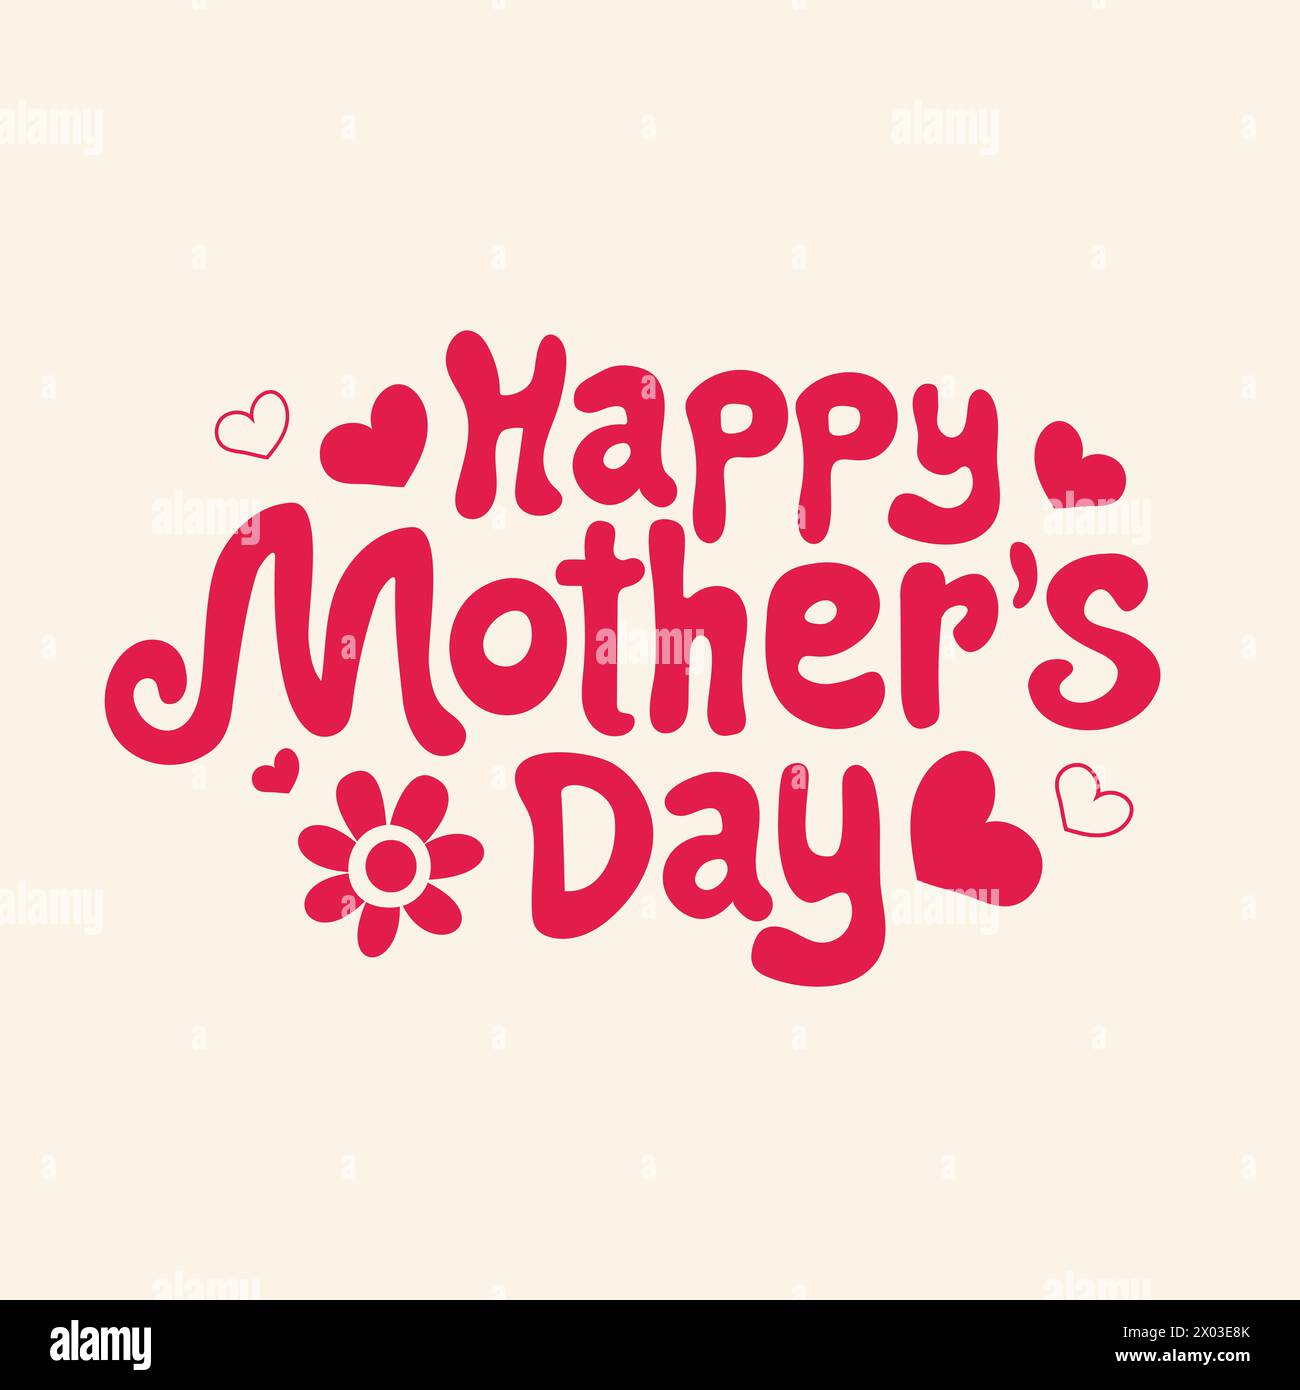 Happy Mother's Day – rosafarbene Handschriftschablone. Schönes Typografie-Design mit Text von Happy Mother's Day. Blumen- und Herzformen Stock Vektor